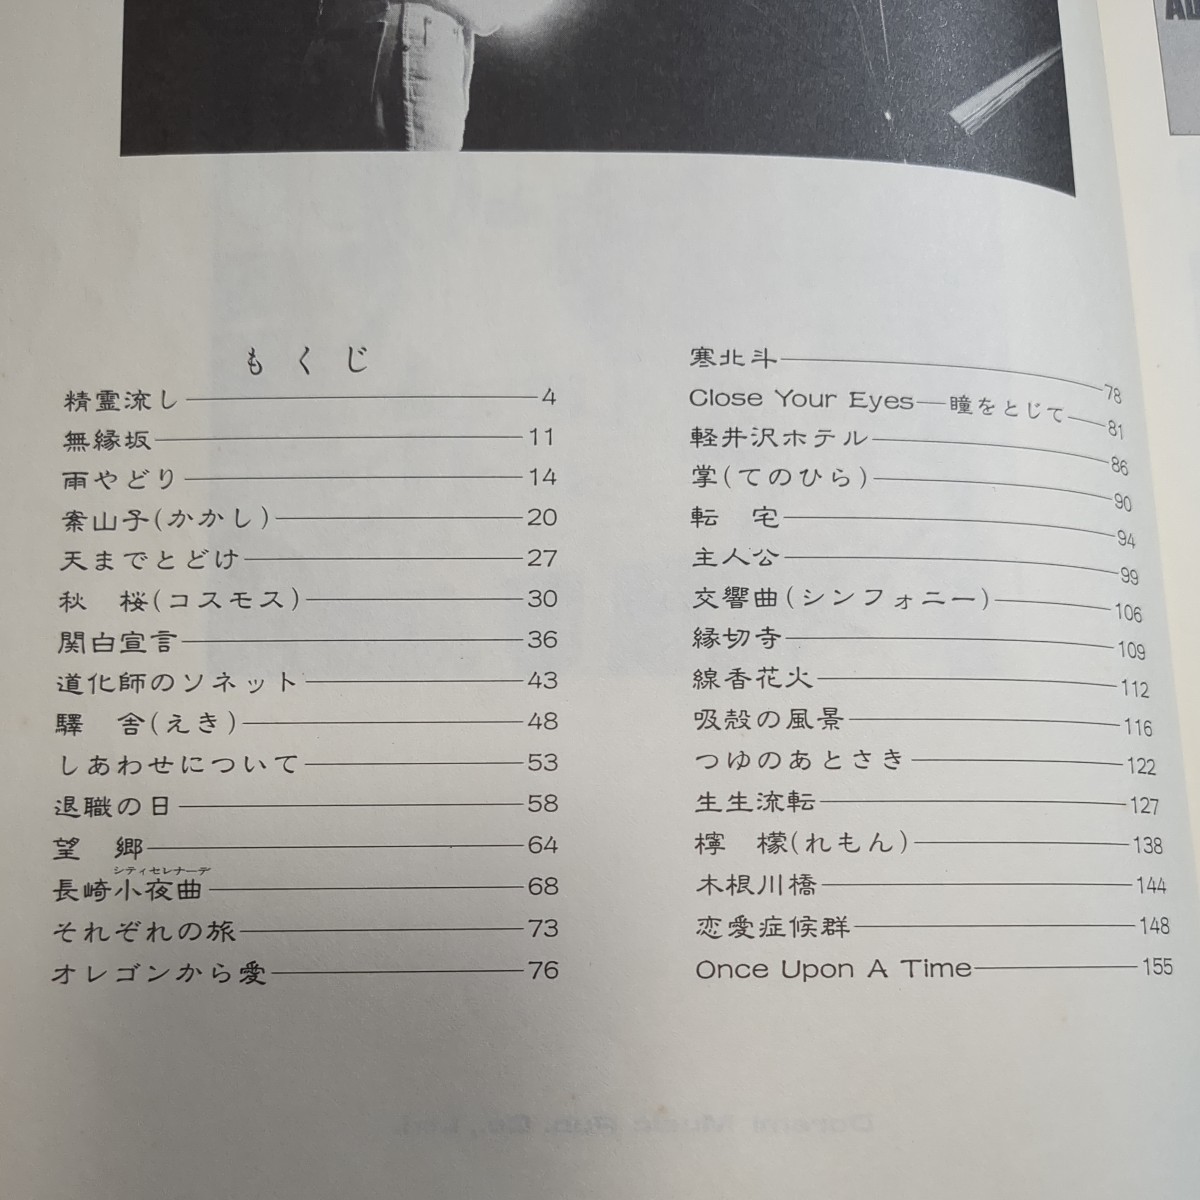  Sada Masashi piano .. language . gray p